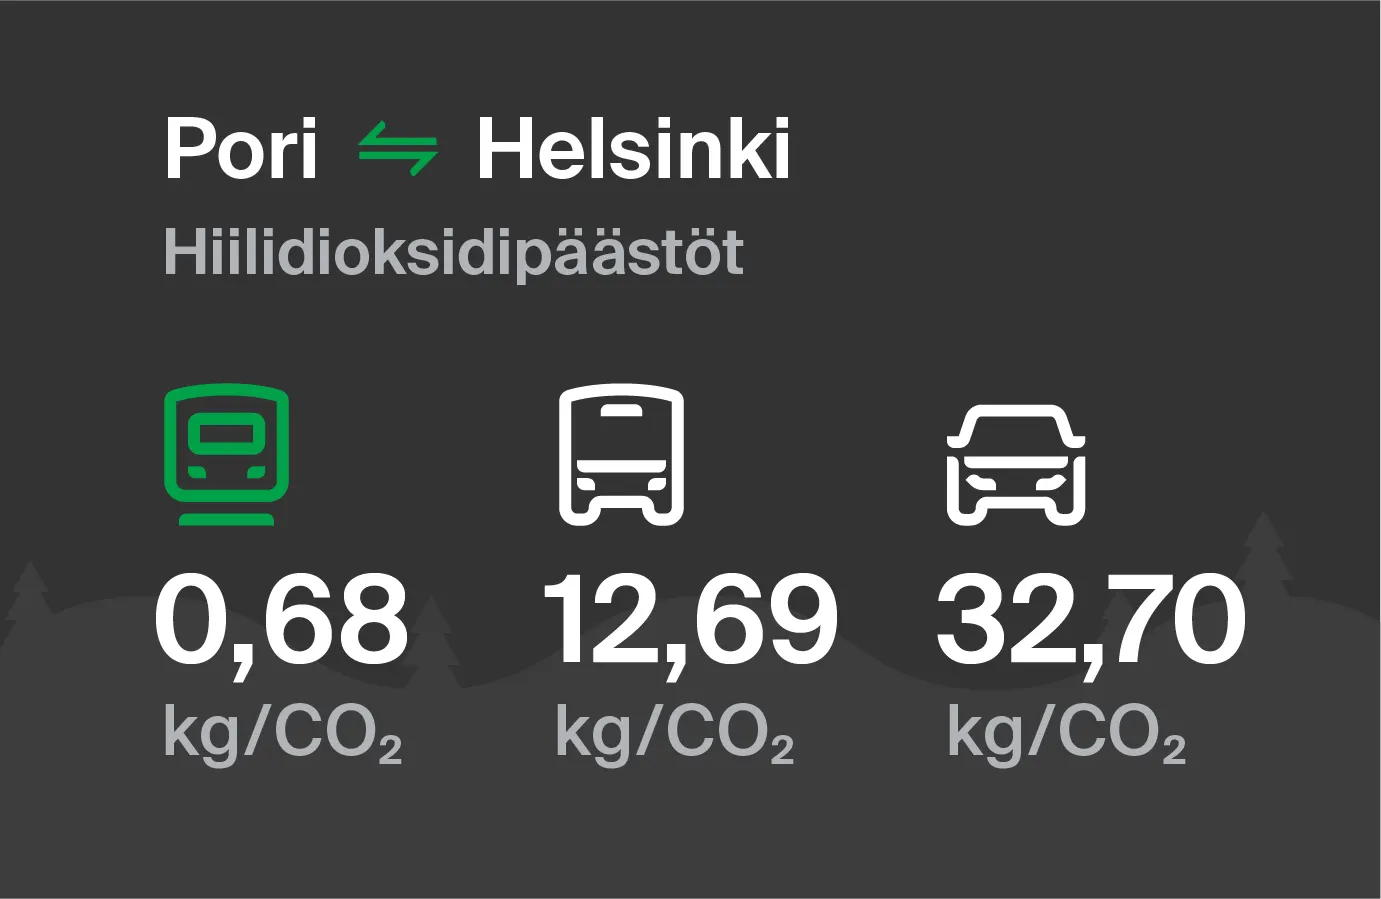 Hiilidioksidipäästöt Porista Helsinkiin eri kulkuvälinemuodoilla: junalla 0,68 kg/CO2, bussilla 12,69 kg/CO2 ja autolla 32,70 kg/CO2.